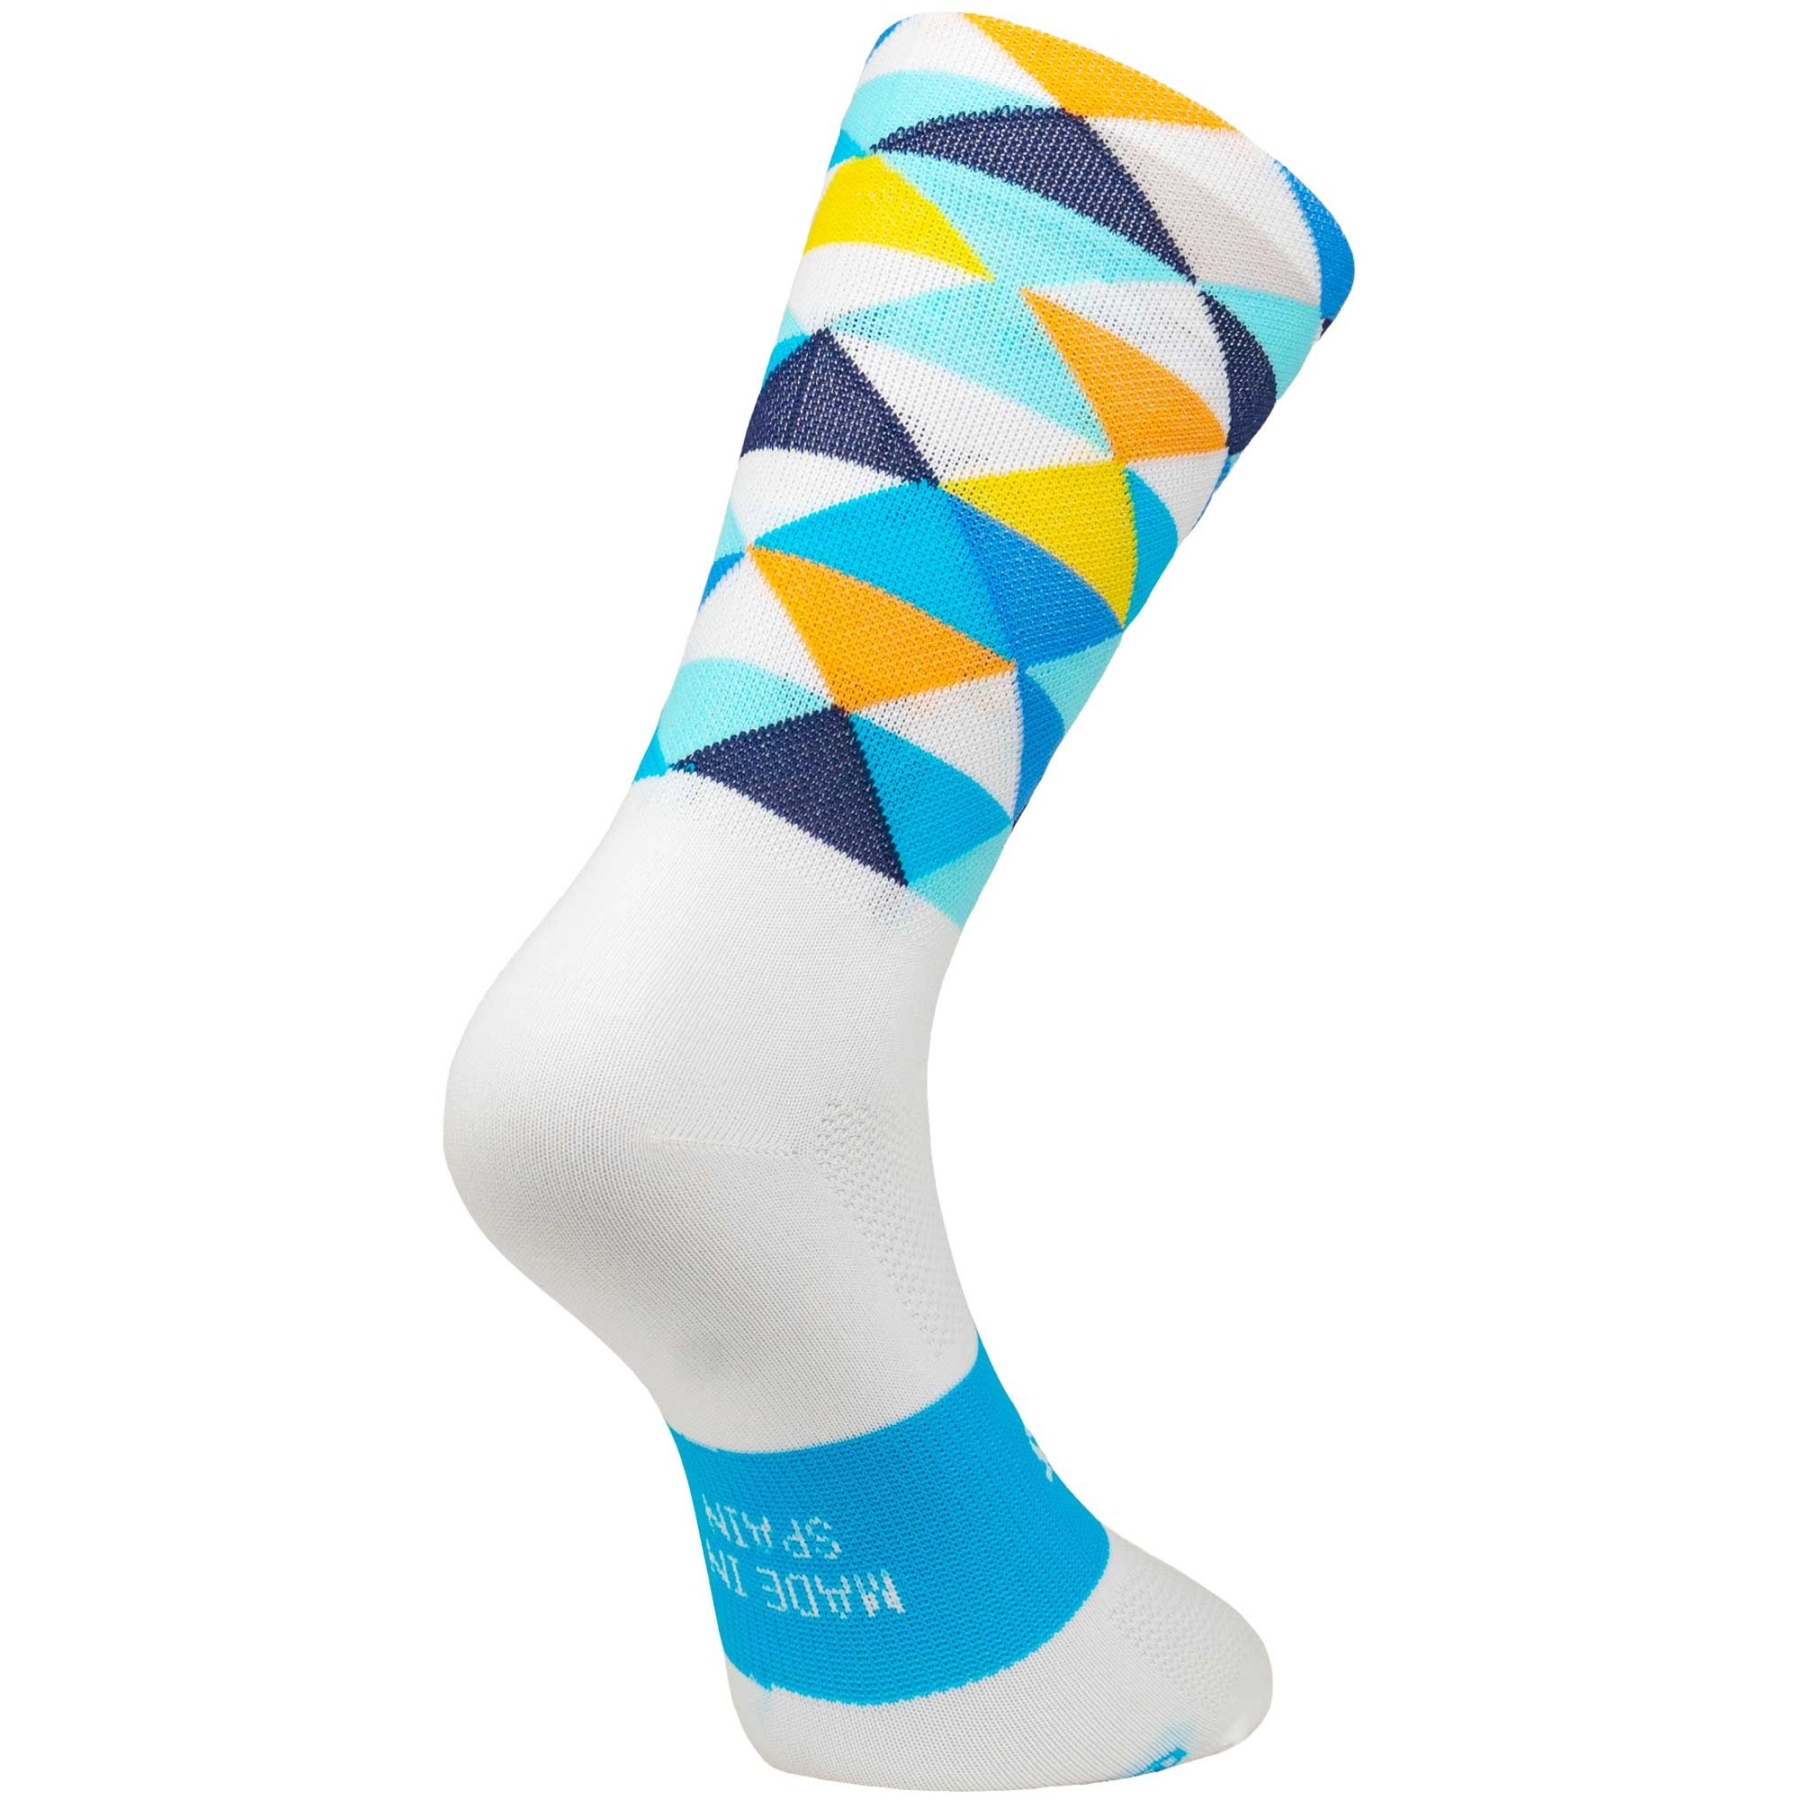 Productfoto van SPORCKS Cycling Socks - Coll De Rates Blue